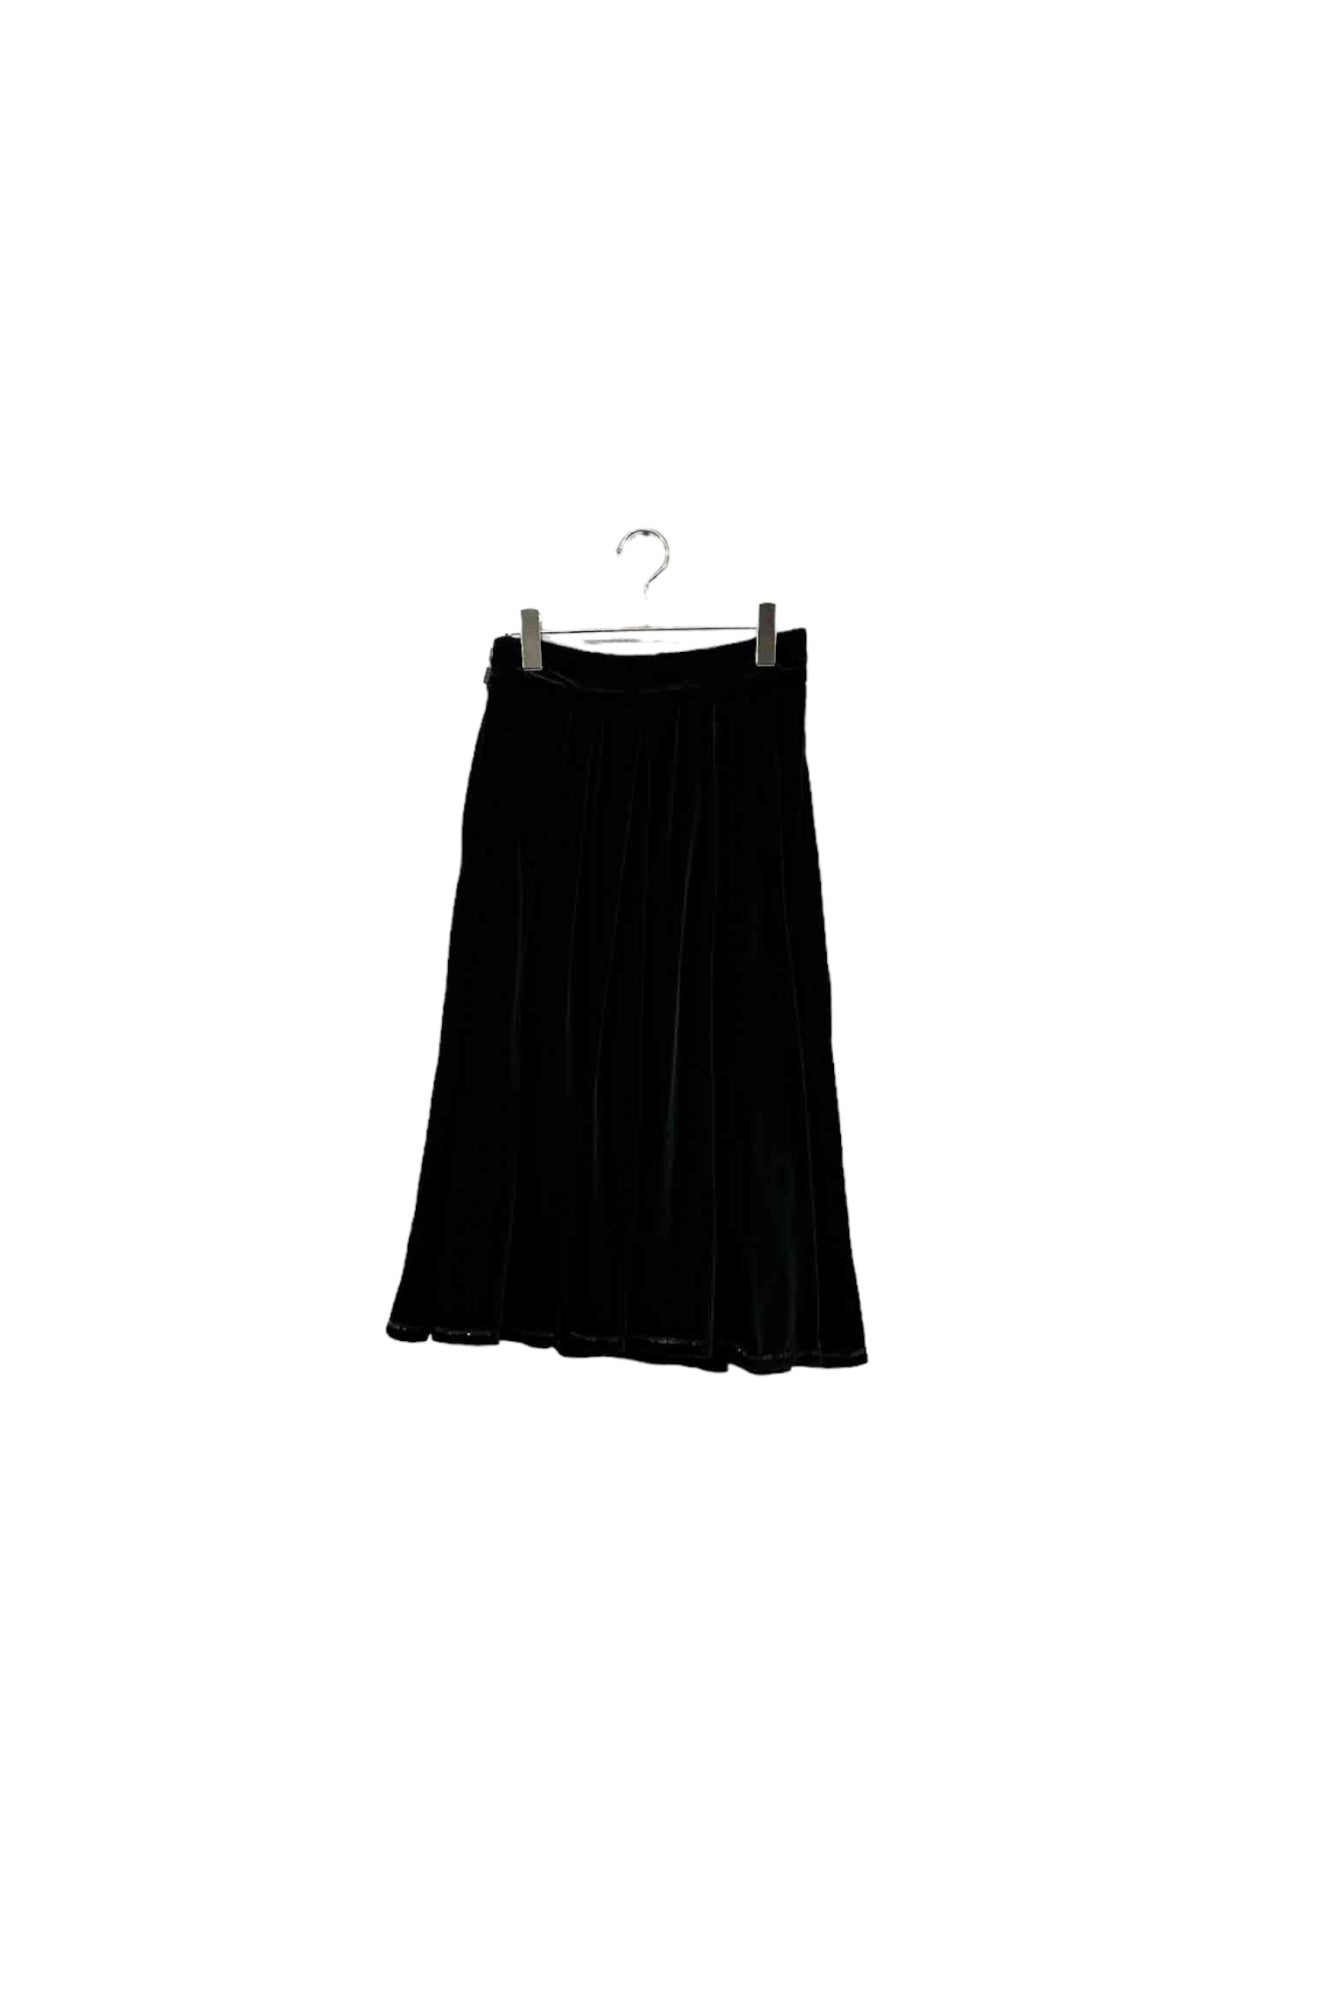 Made in FRANCE Guy Laroche black velor skirt